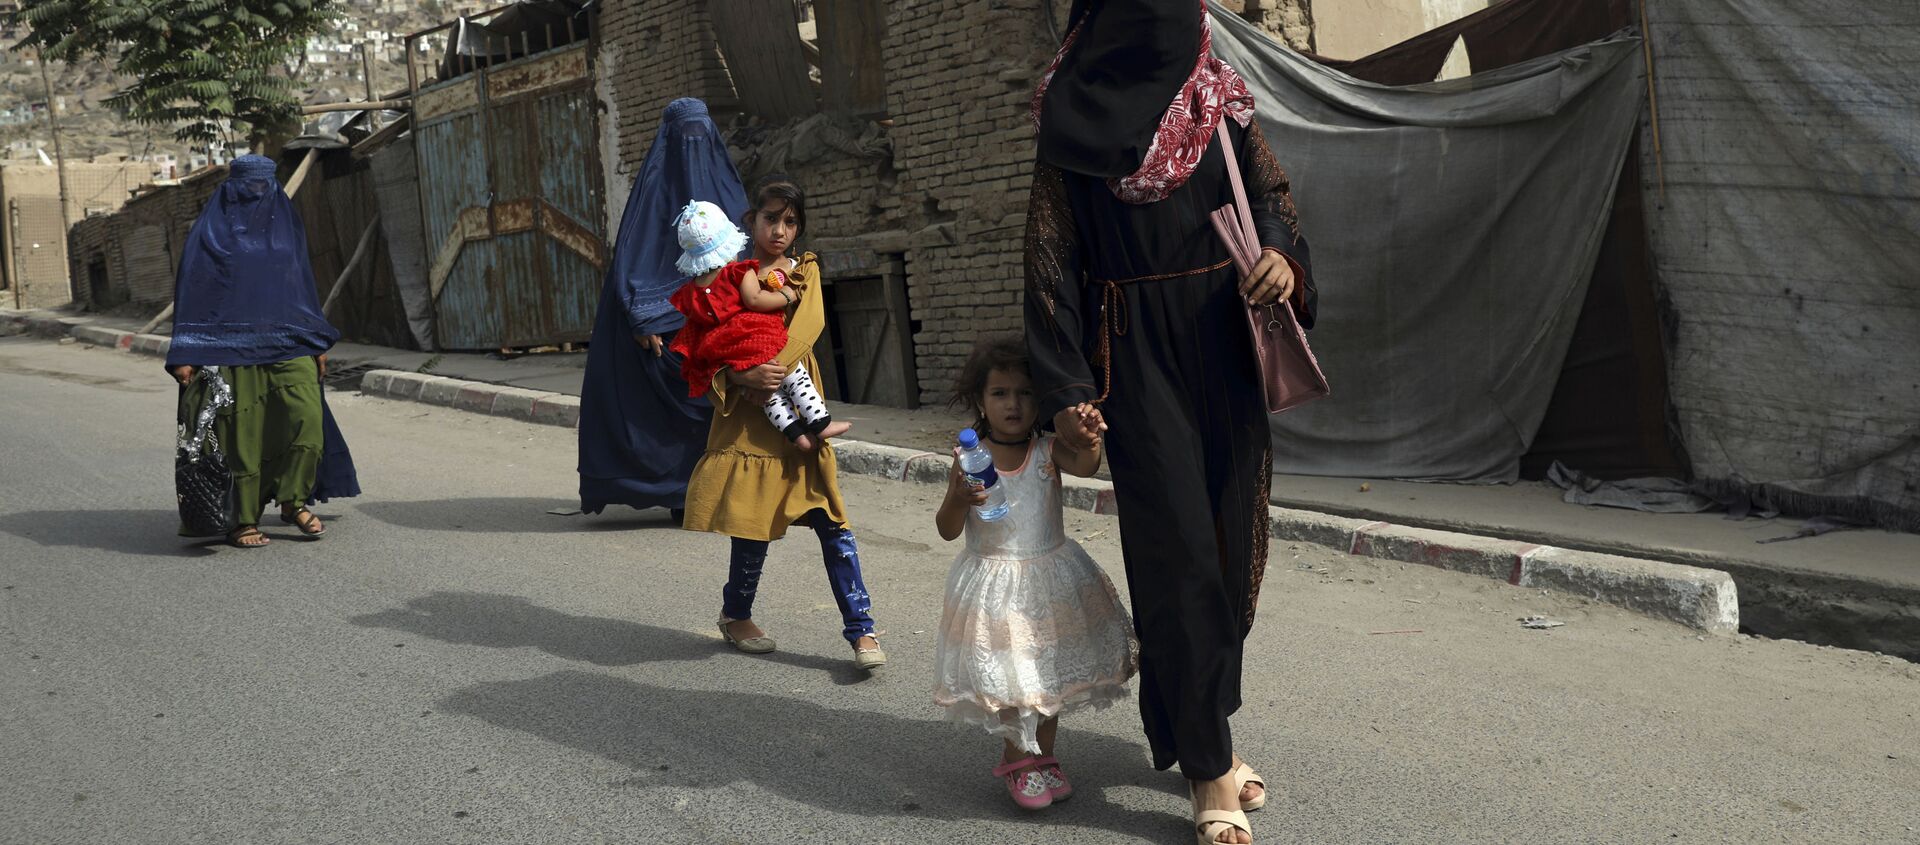 Phụ nữ và trẻ em gái Afghanistan trên đường phố ở Kabul - Sputnik Việt Nam, 1920, 10.09.2021